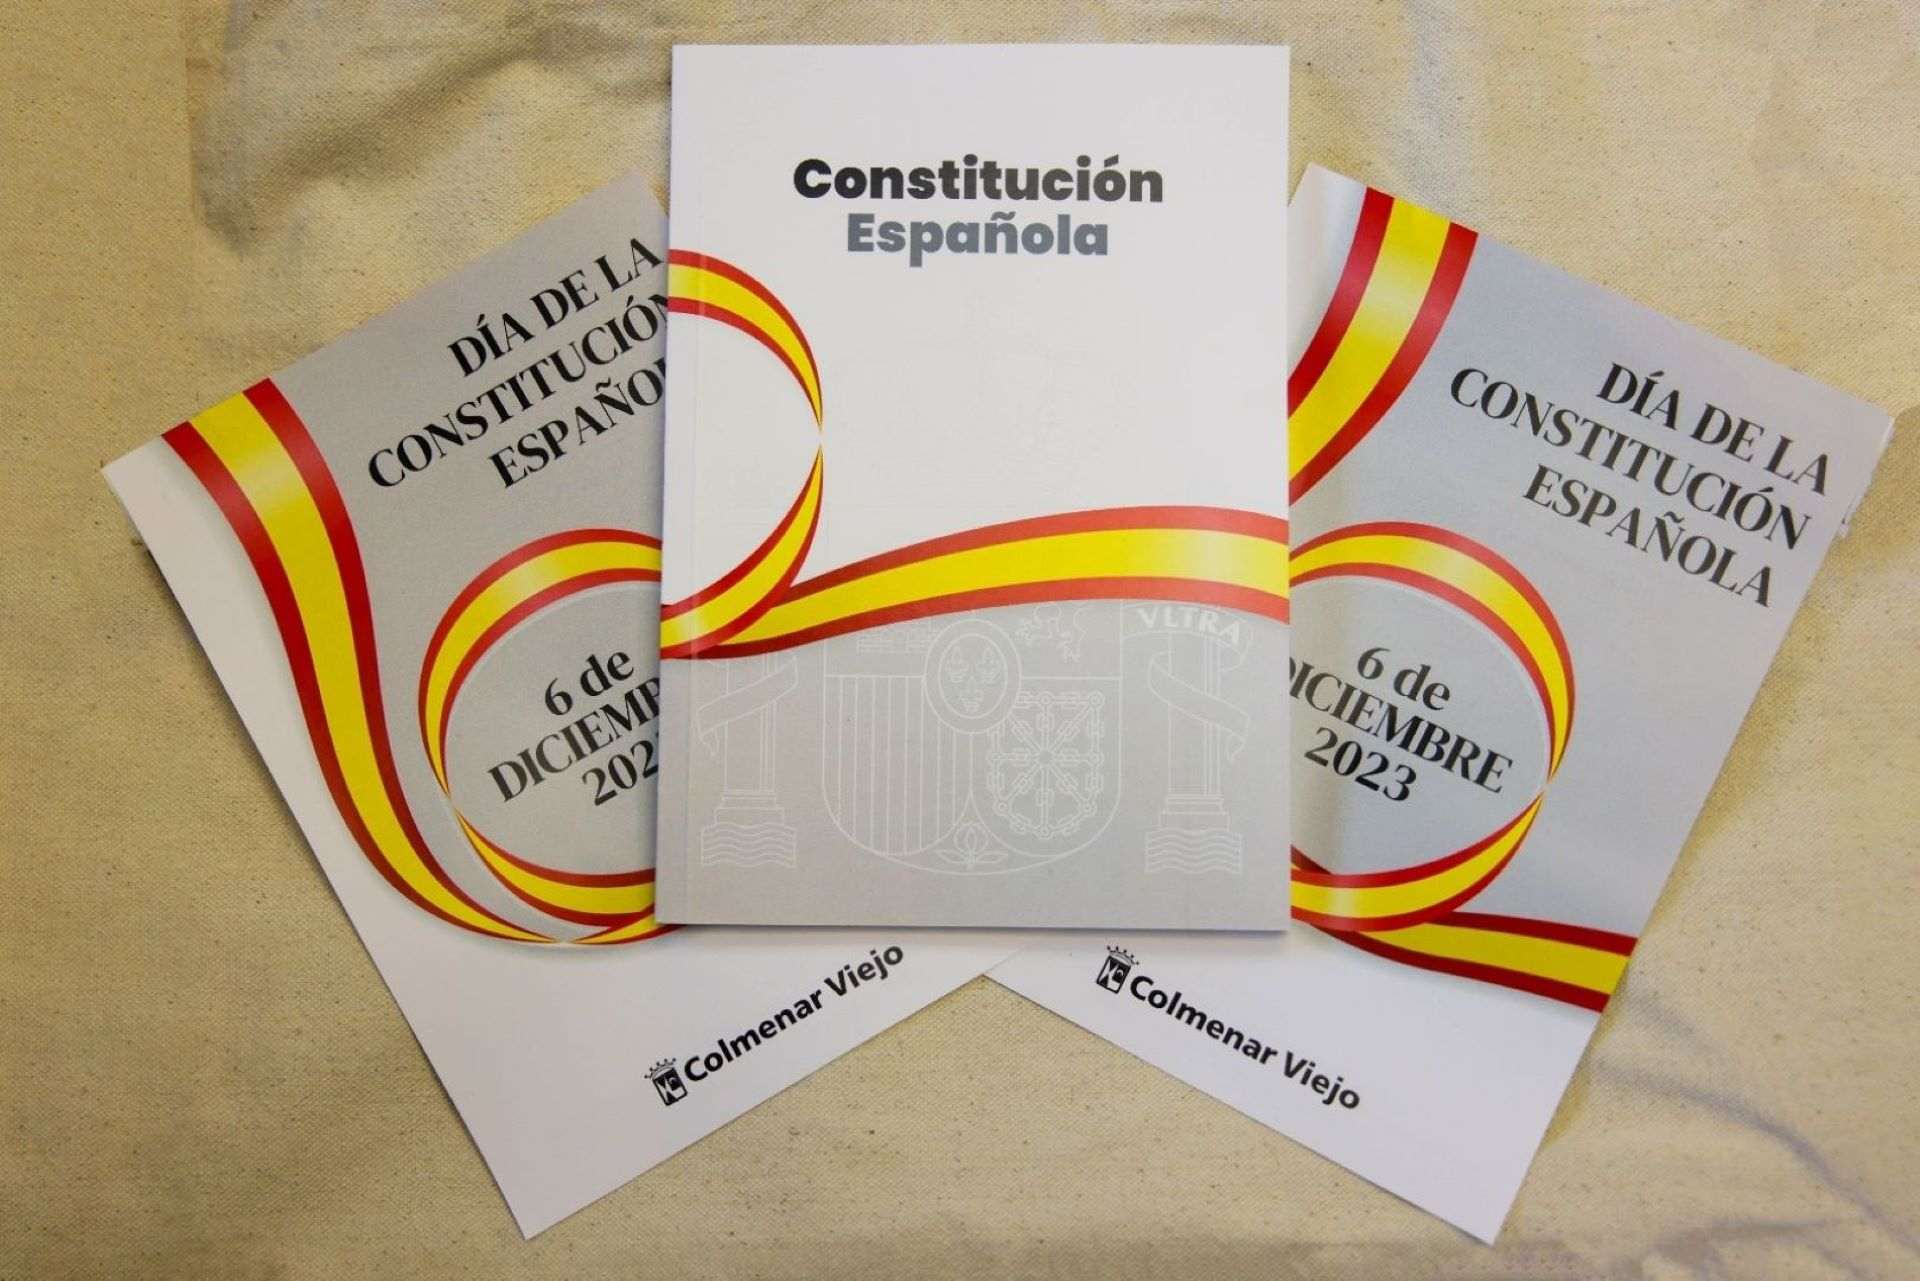 Et sents representat per la Constitució espanyola?